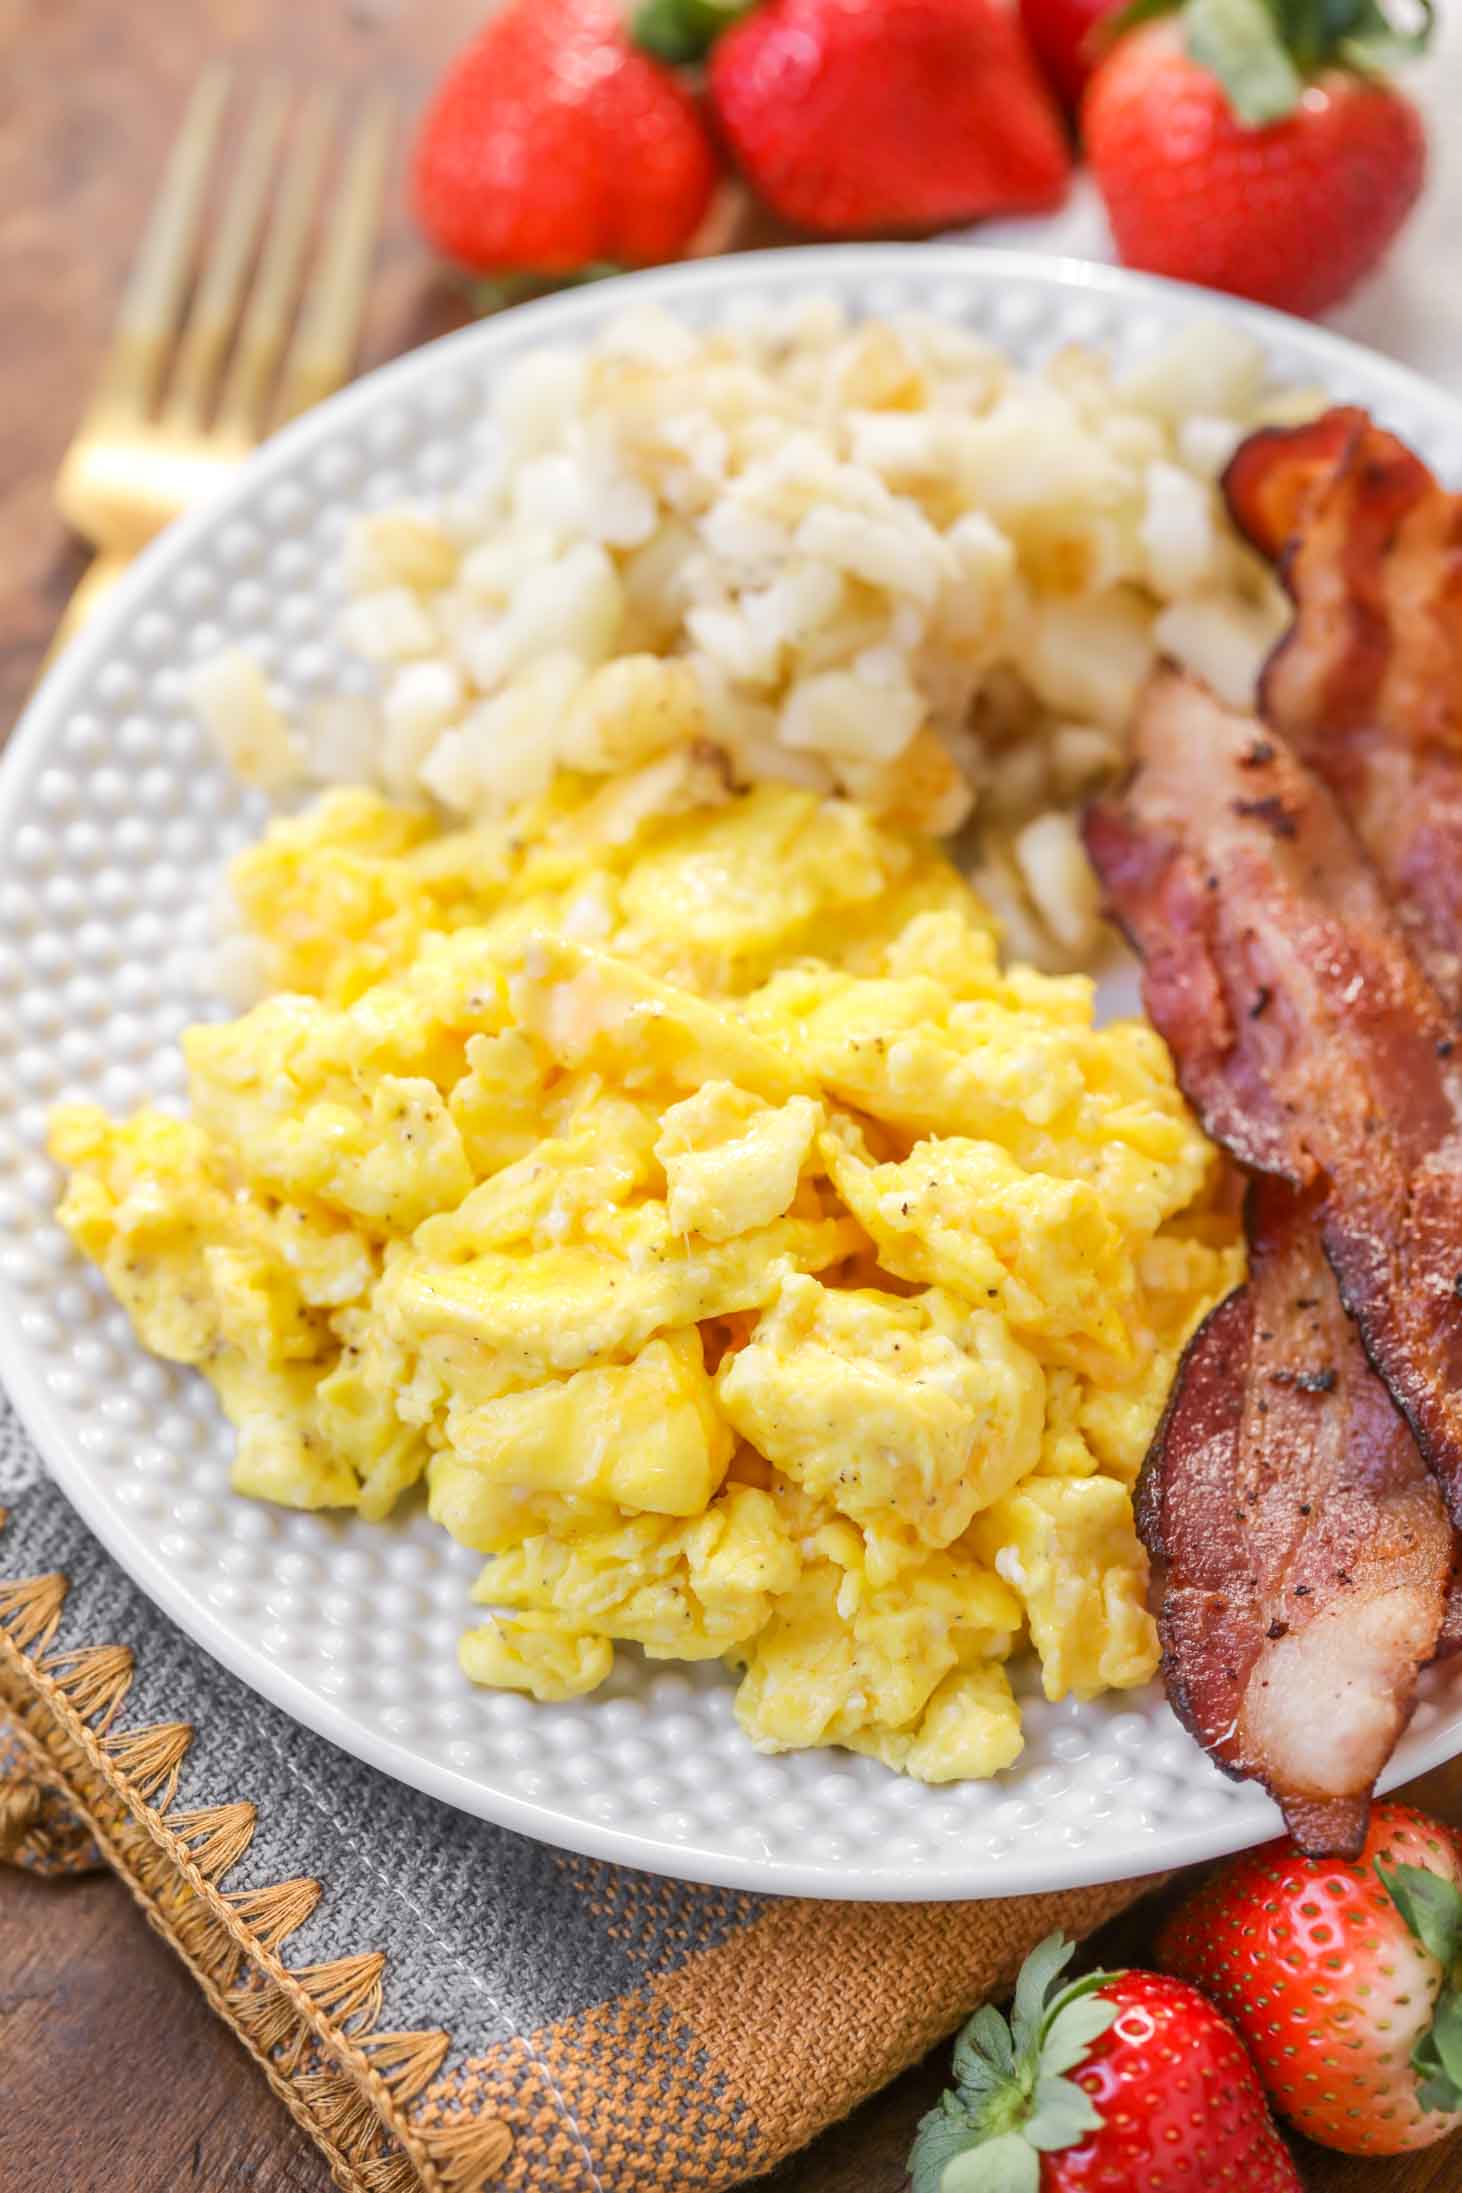 炒鸡蛋配早餐和肉汁。